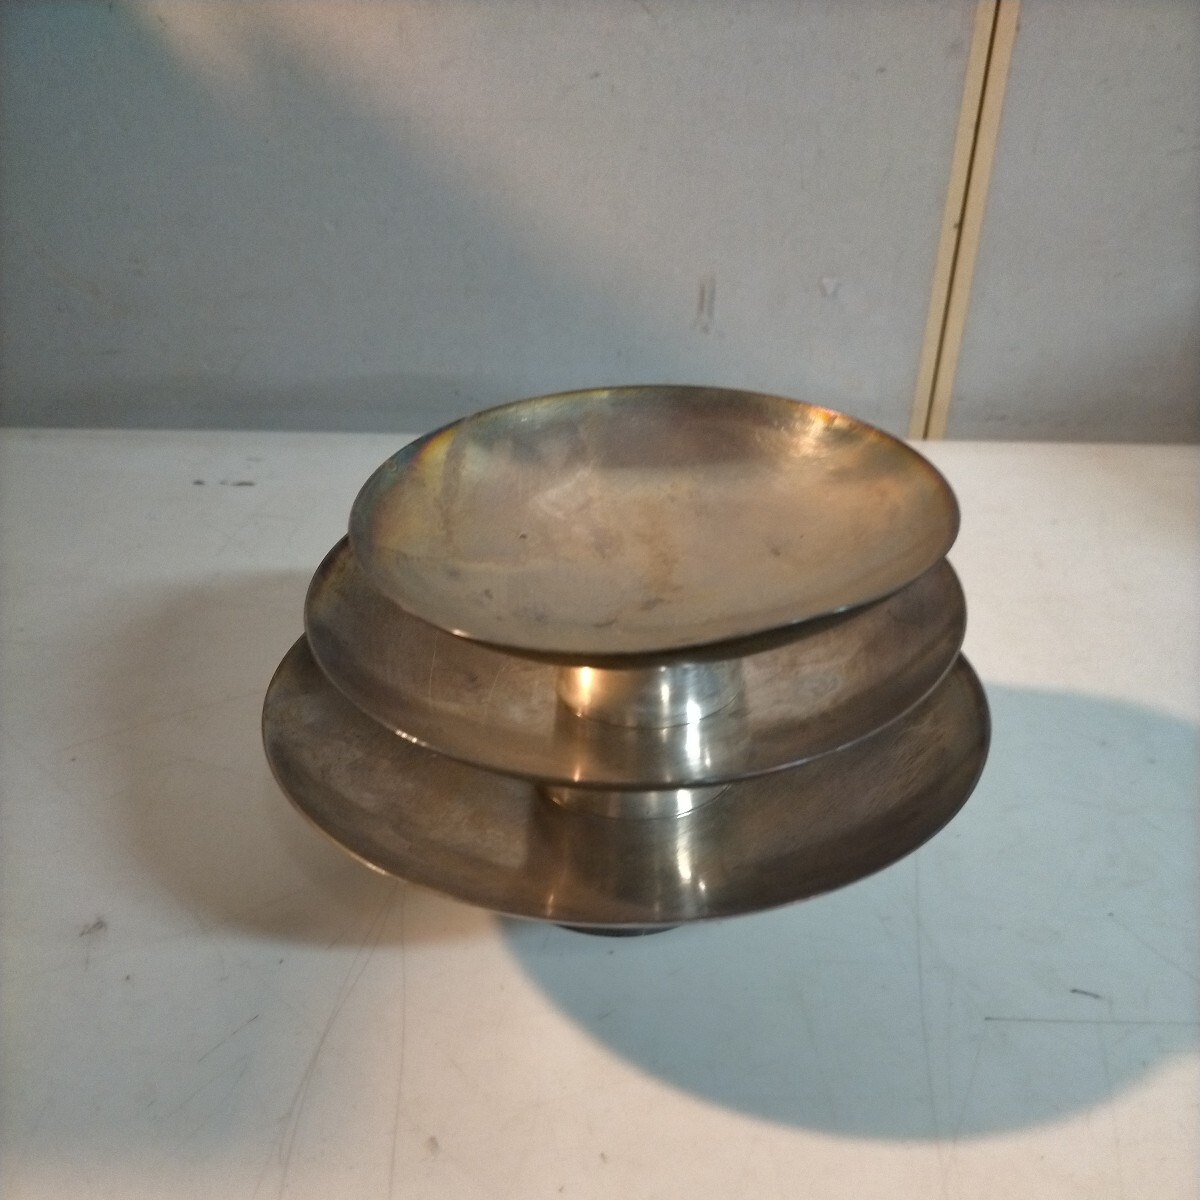  оригинальный серебряный серебряный тарелка примерно 358g Tenshodo серебряный чистый серебряный pure silver* б/у / не чистка не осмотр товар / фотография . уточните пожалуйста /NCNR